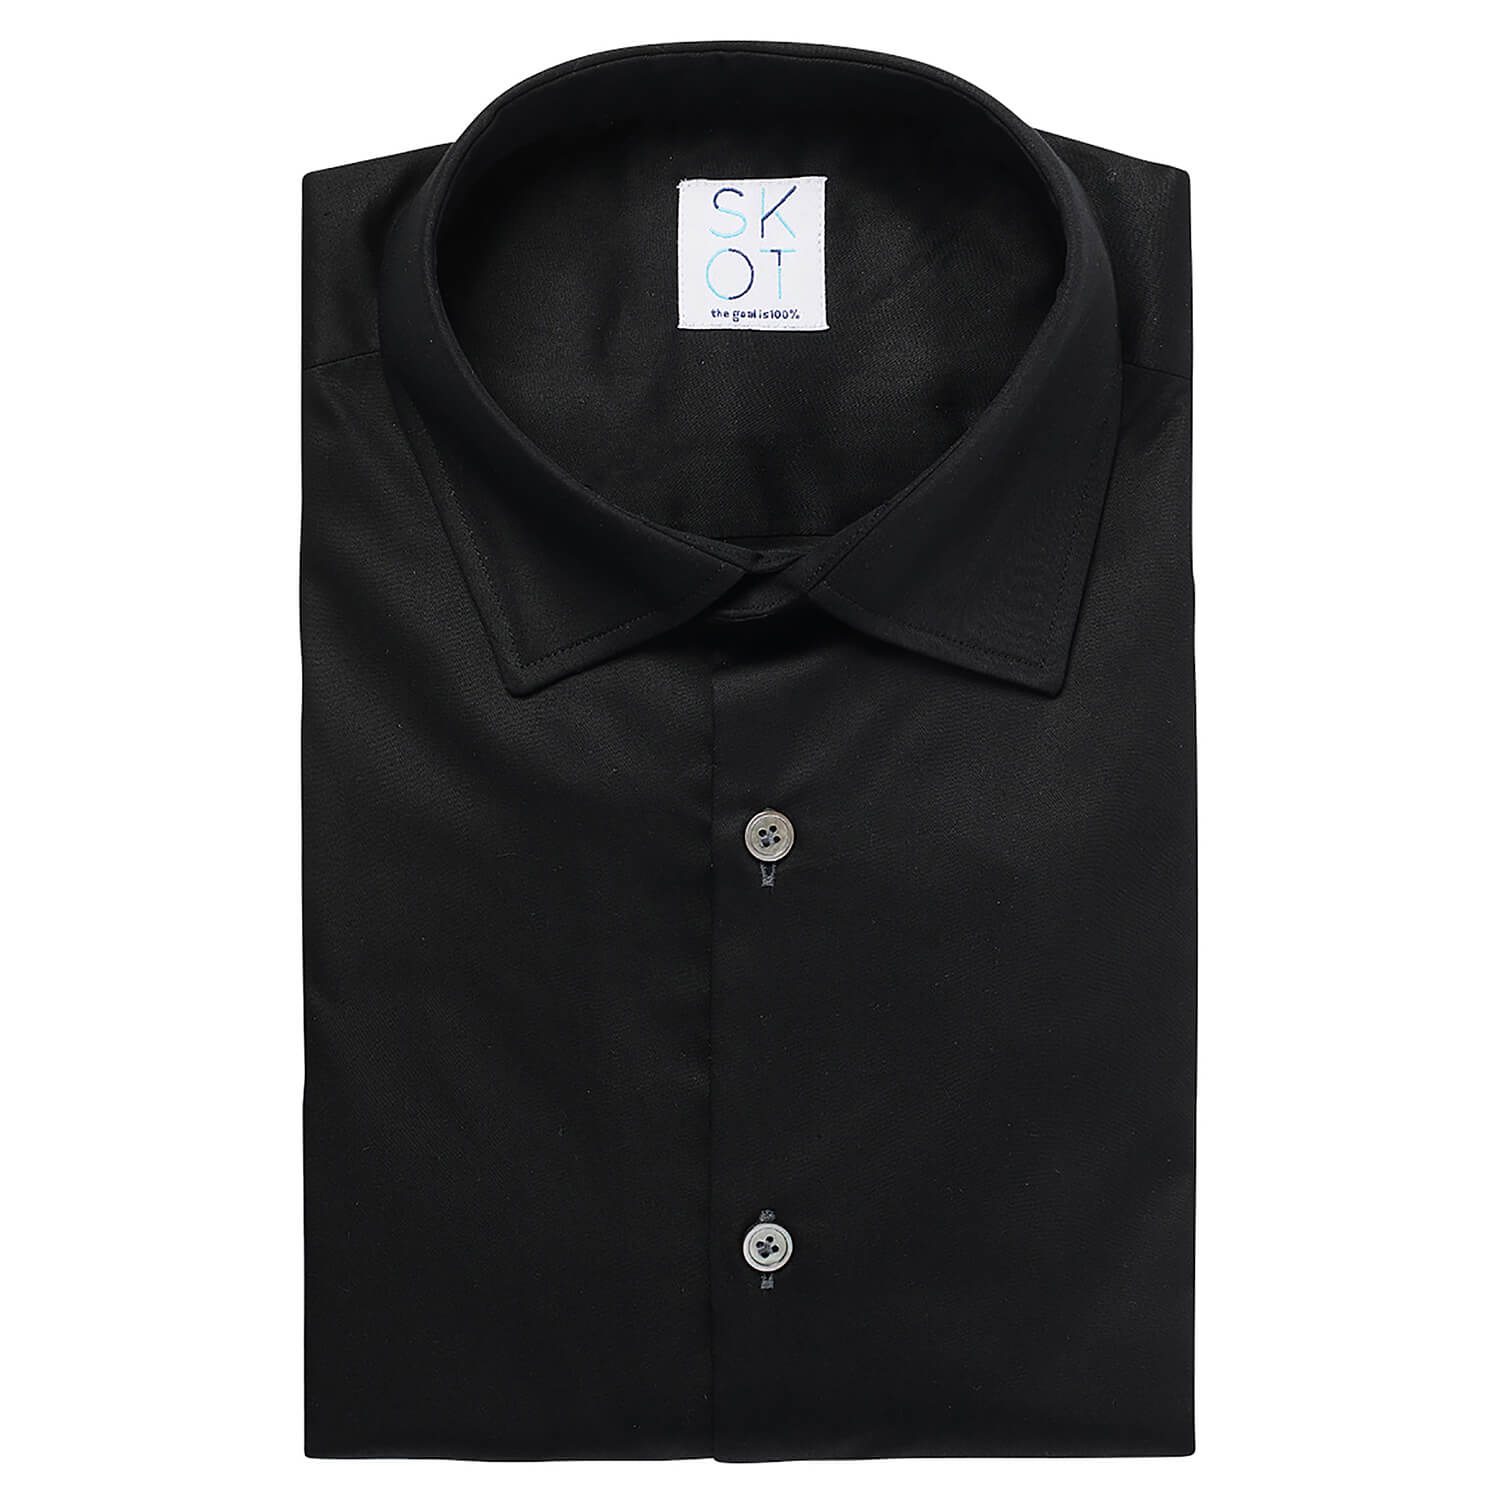 SKOT Duurzaam Overhemd Heren - Hemd Volwassenen - Circular Black - Slim Fit - Zwart - Maat M